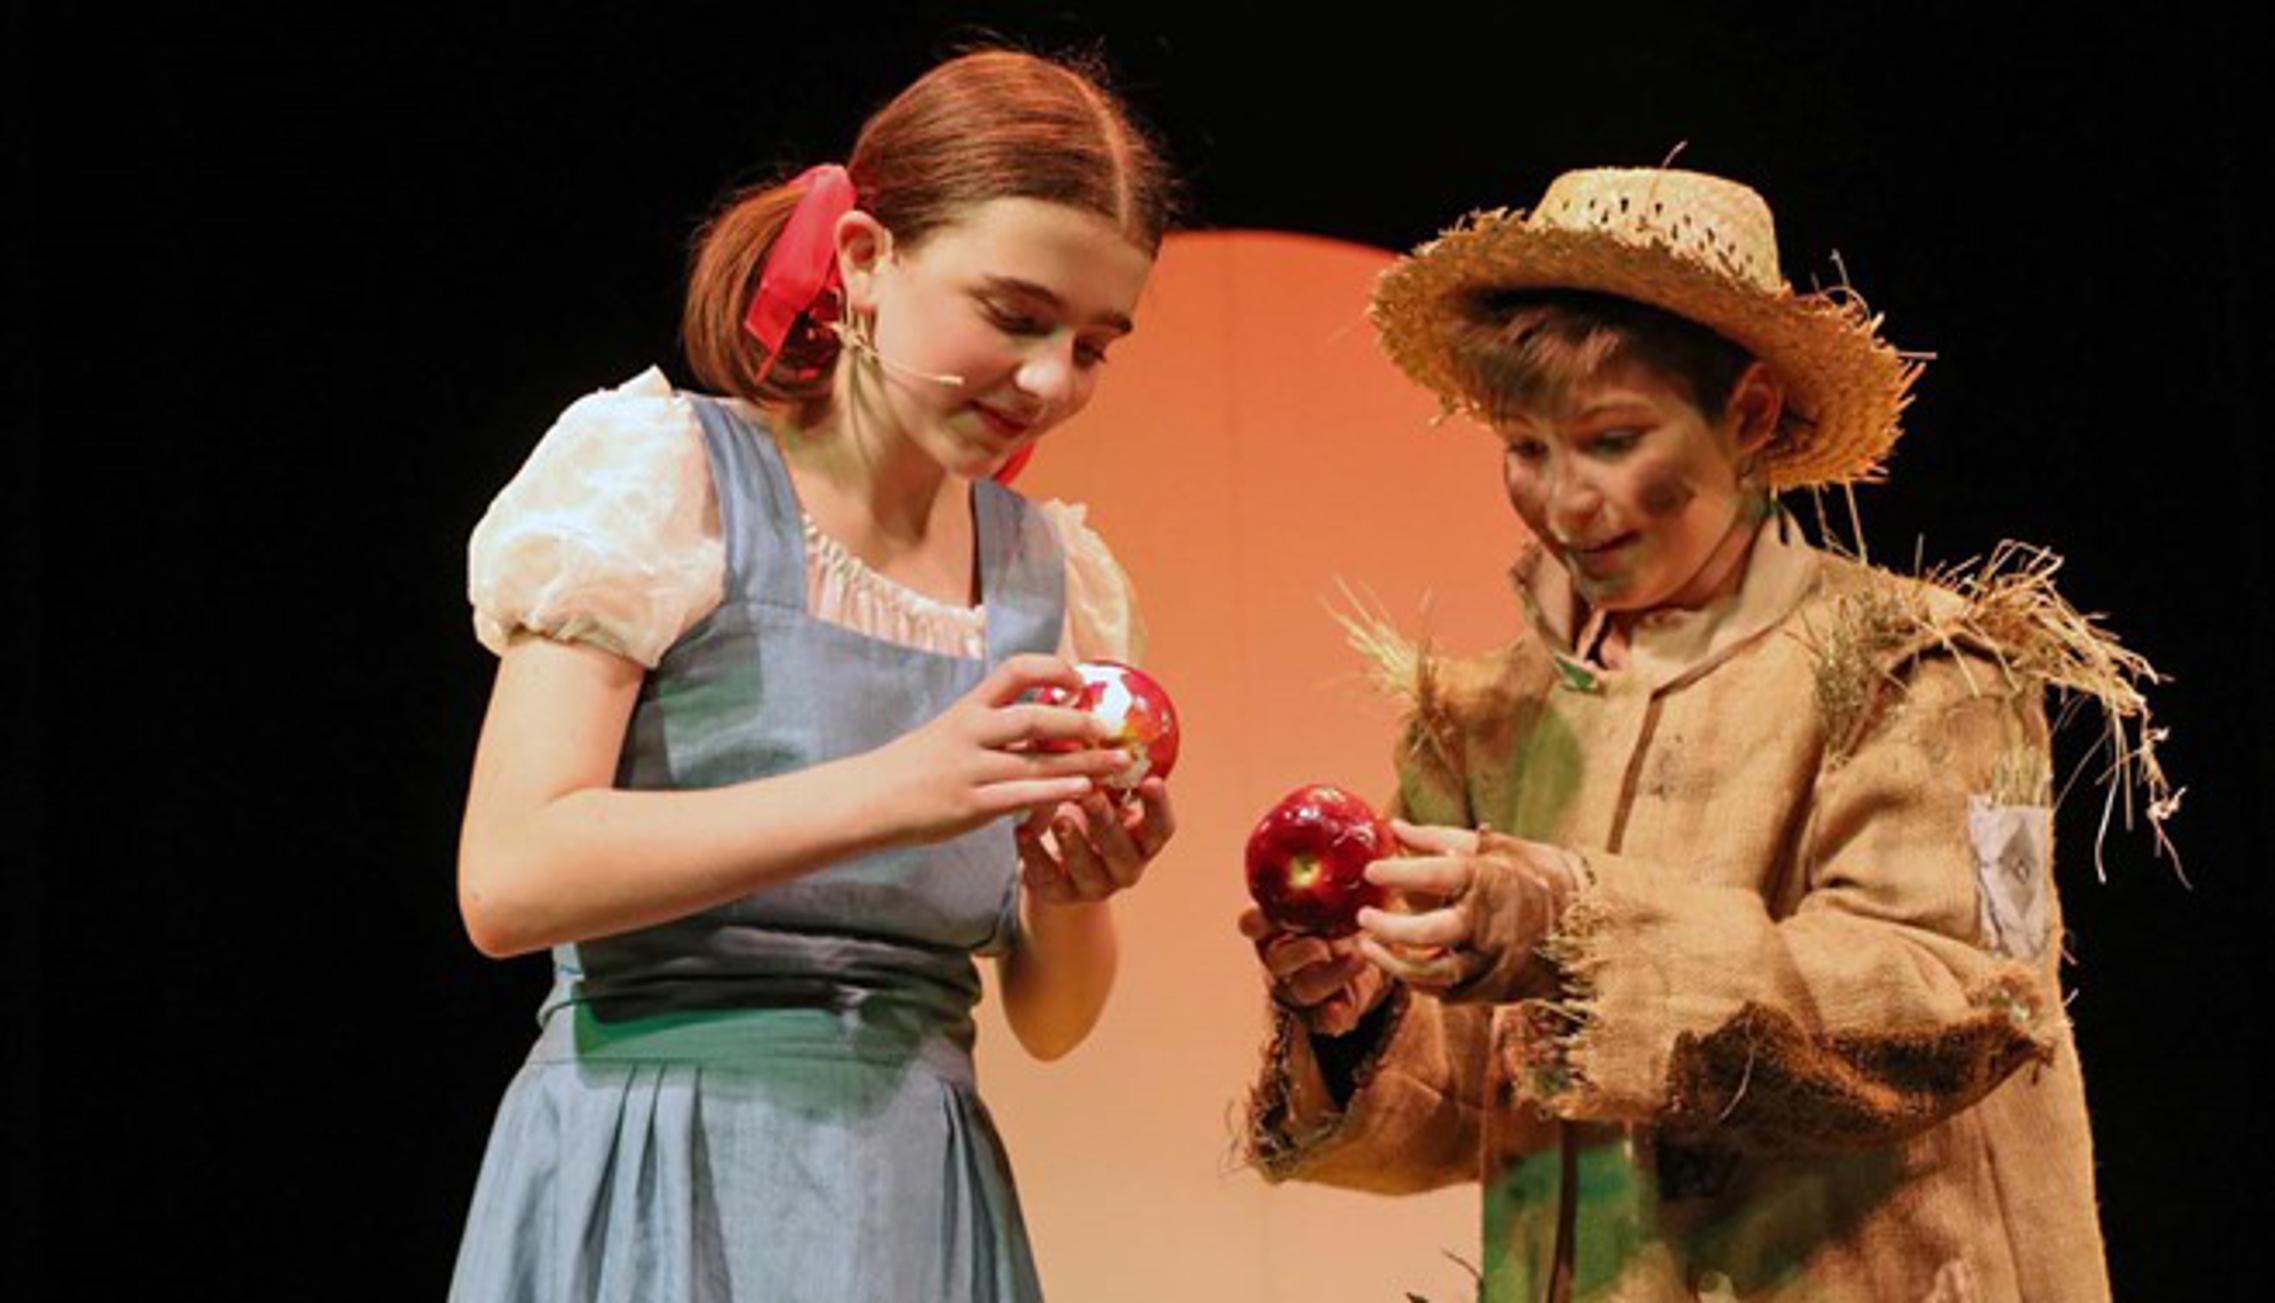 Predstava za djecu "Čarobnjak iz Oza" u produkciji HNK Ivana pl. Zajca. (Ilustracija)